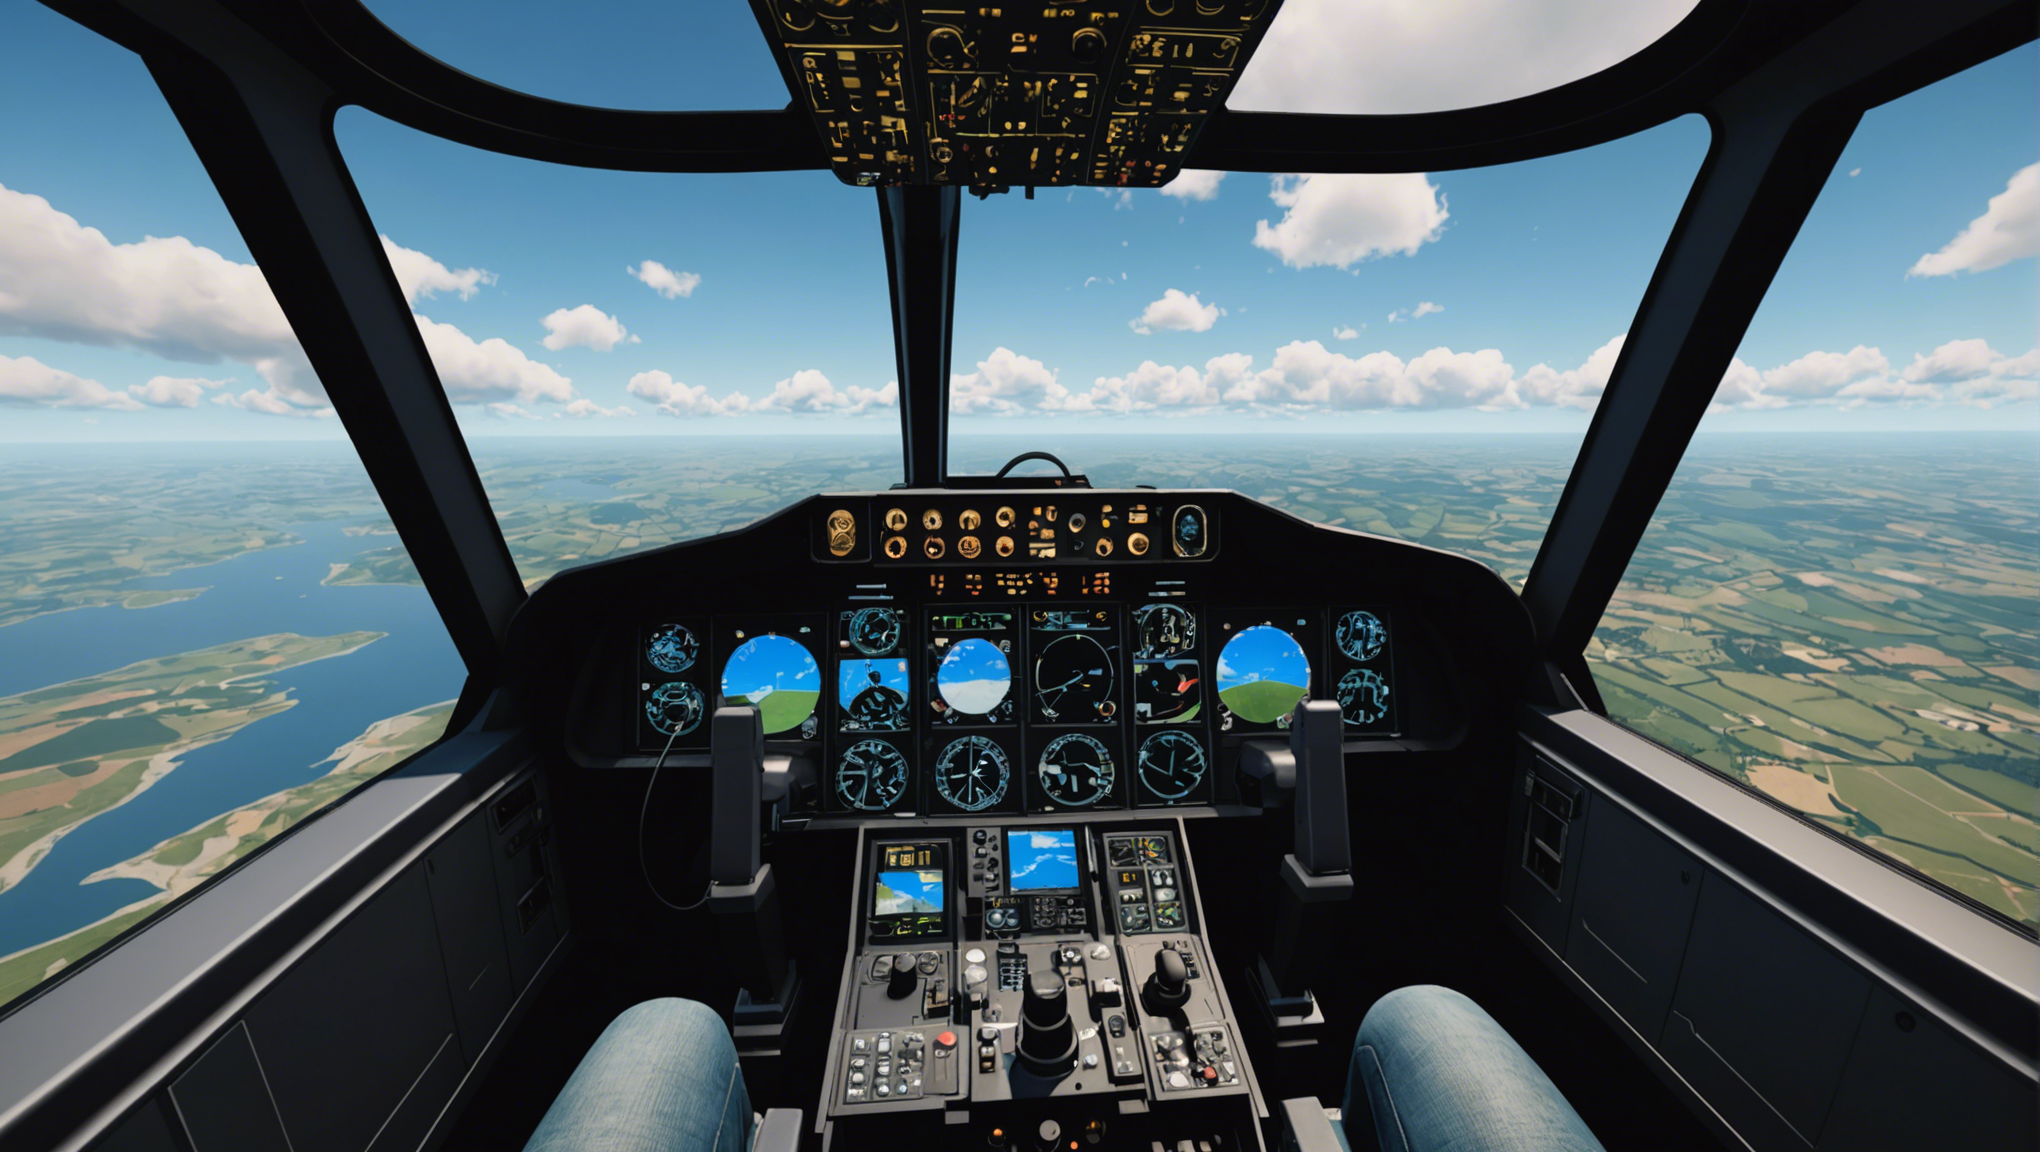 découvrez l'expérience immersive de vol offerte par l'animation vr vol flight simulator et prenez les commandes d'un avion comme jamais auparavant.